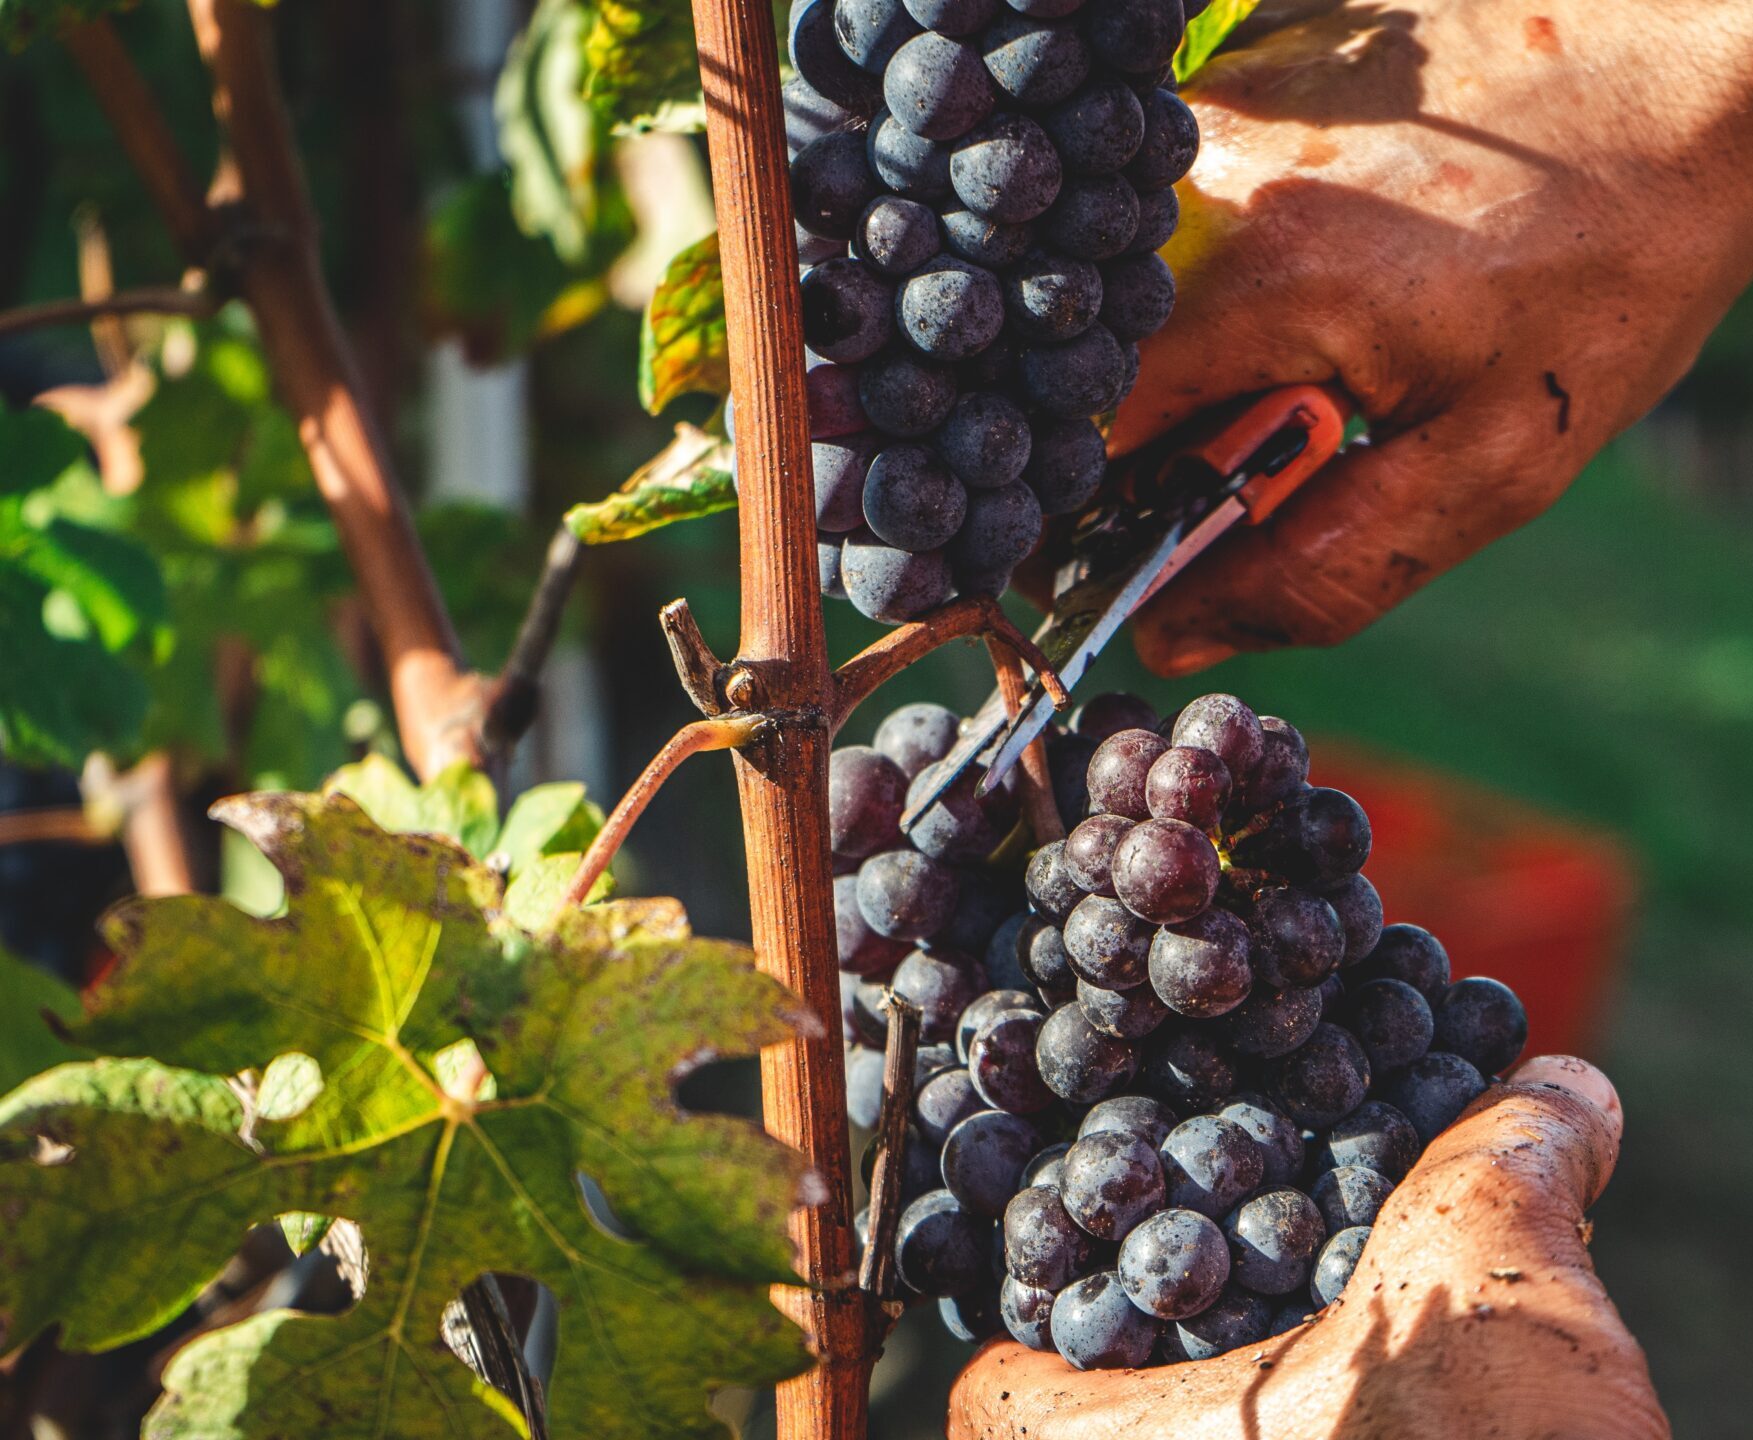 Persoon die druiven plukt. Dit is de start van het duurzame en traceerbare wijnproces.